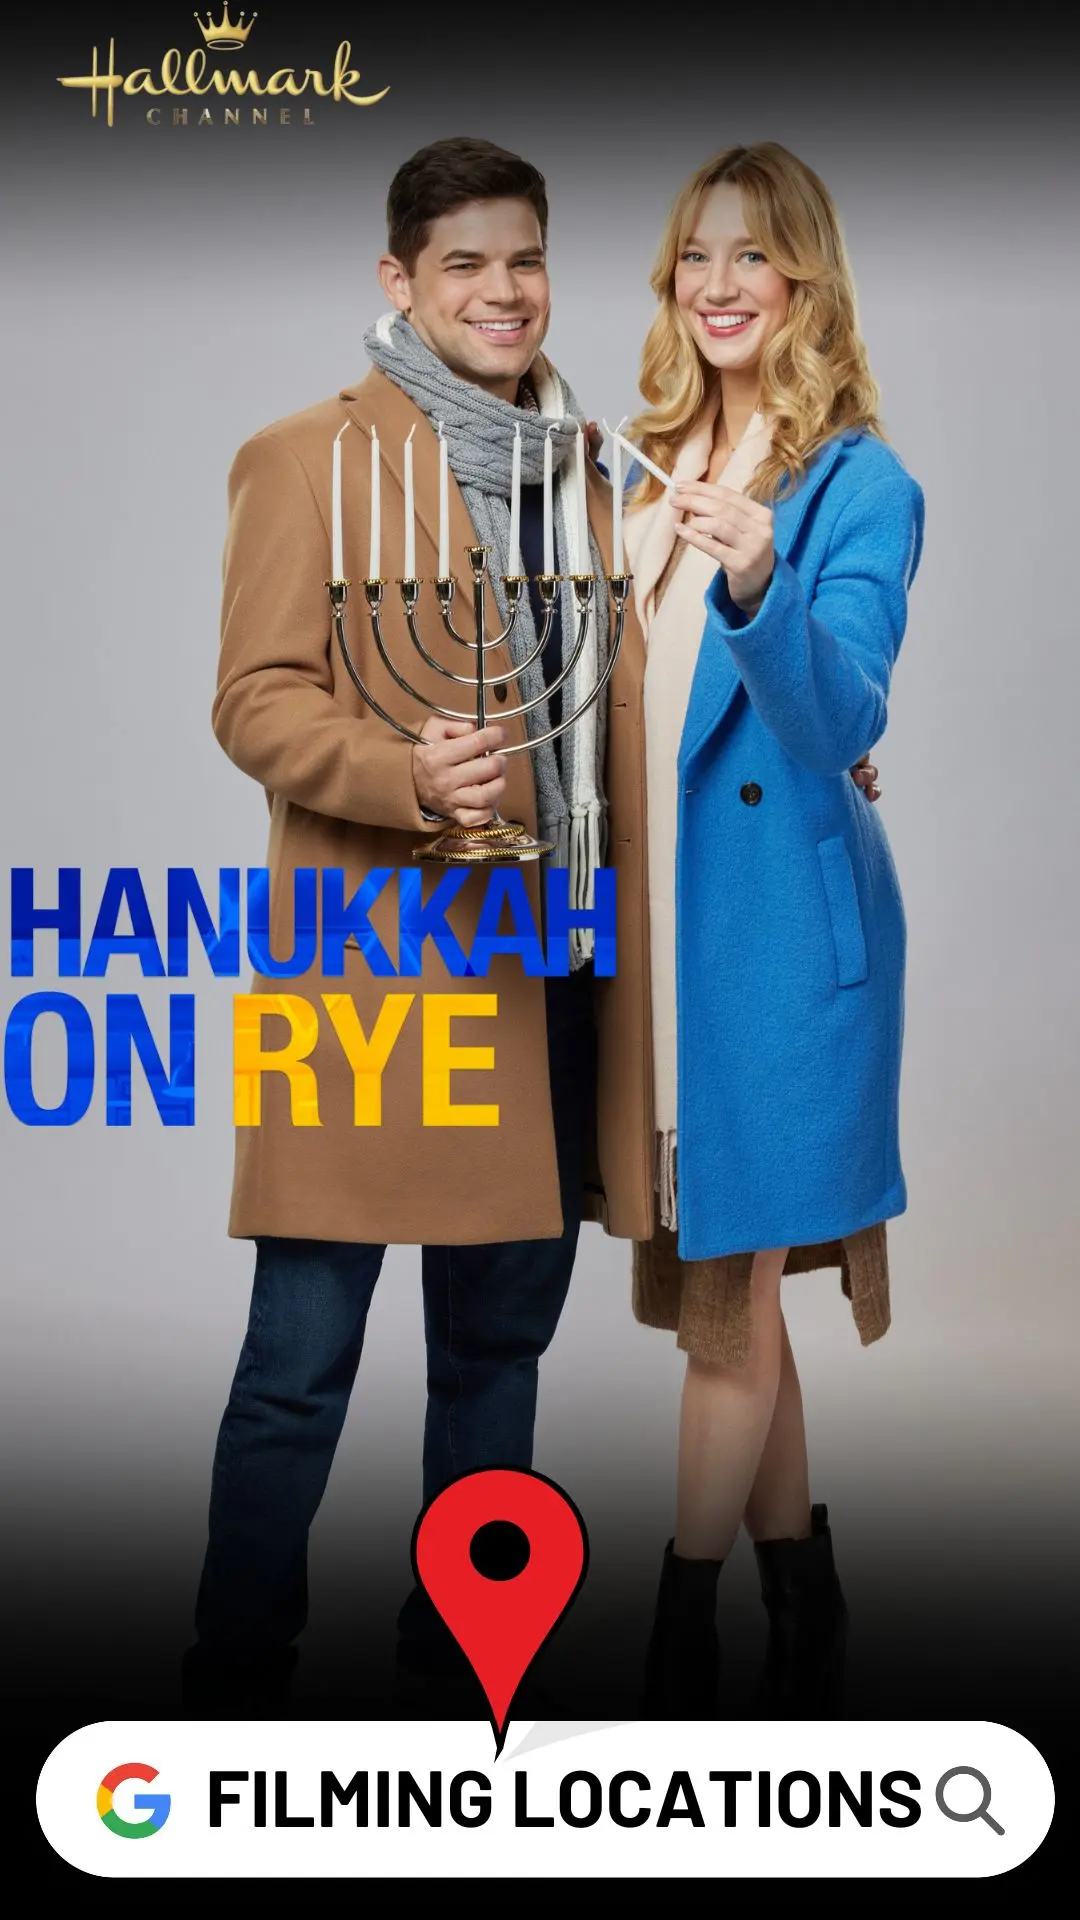 Hanukkah on Rye Filming locations